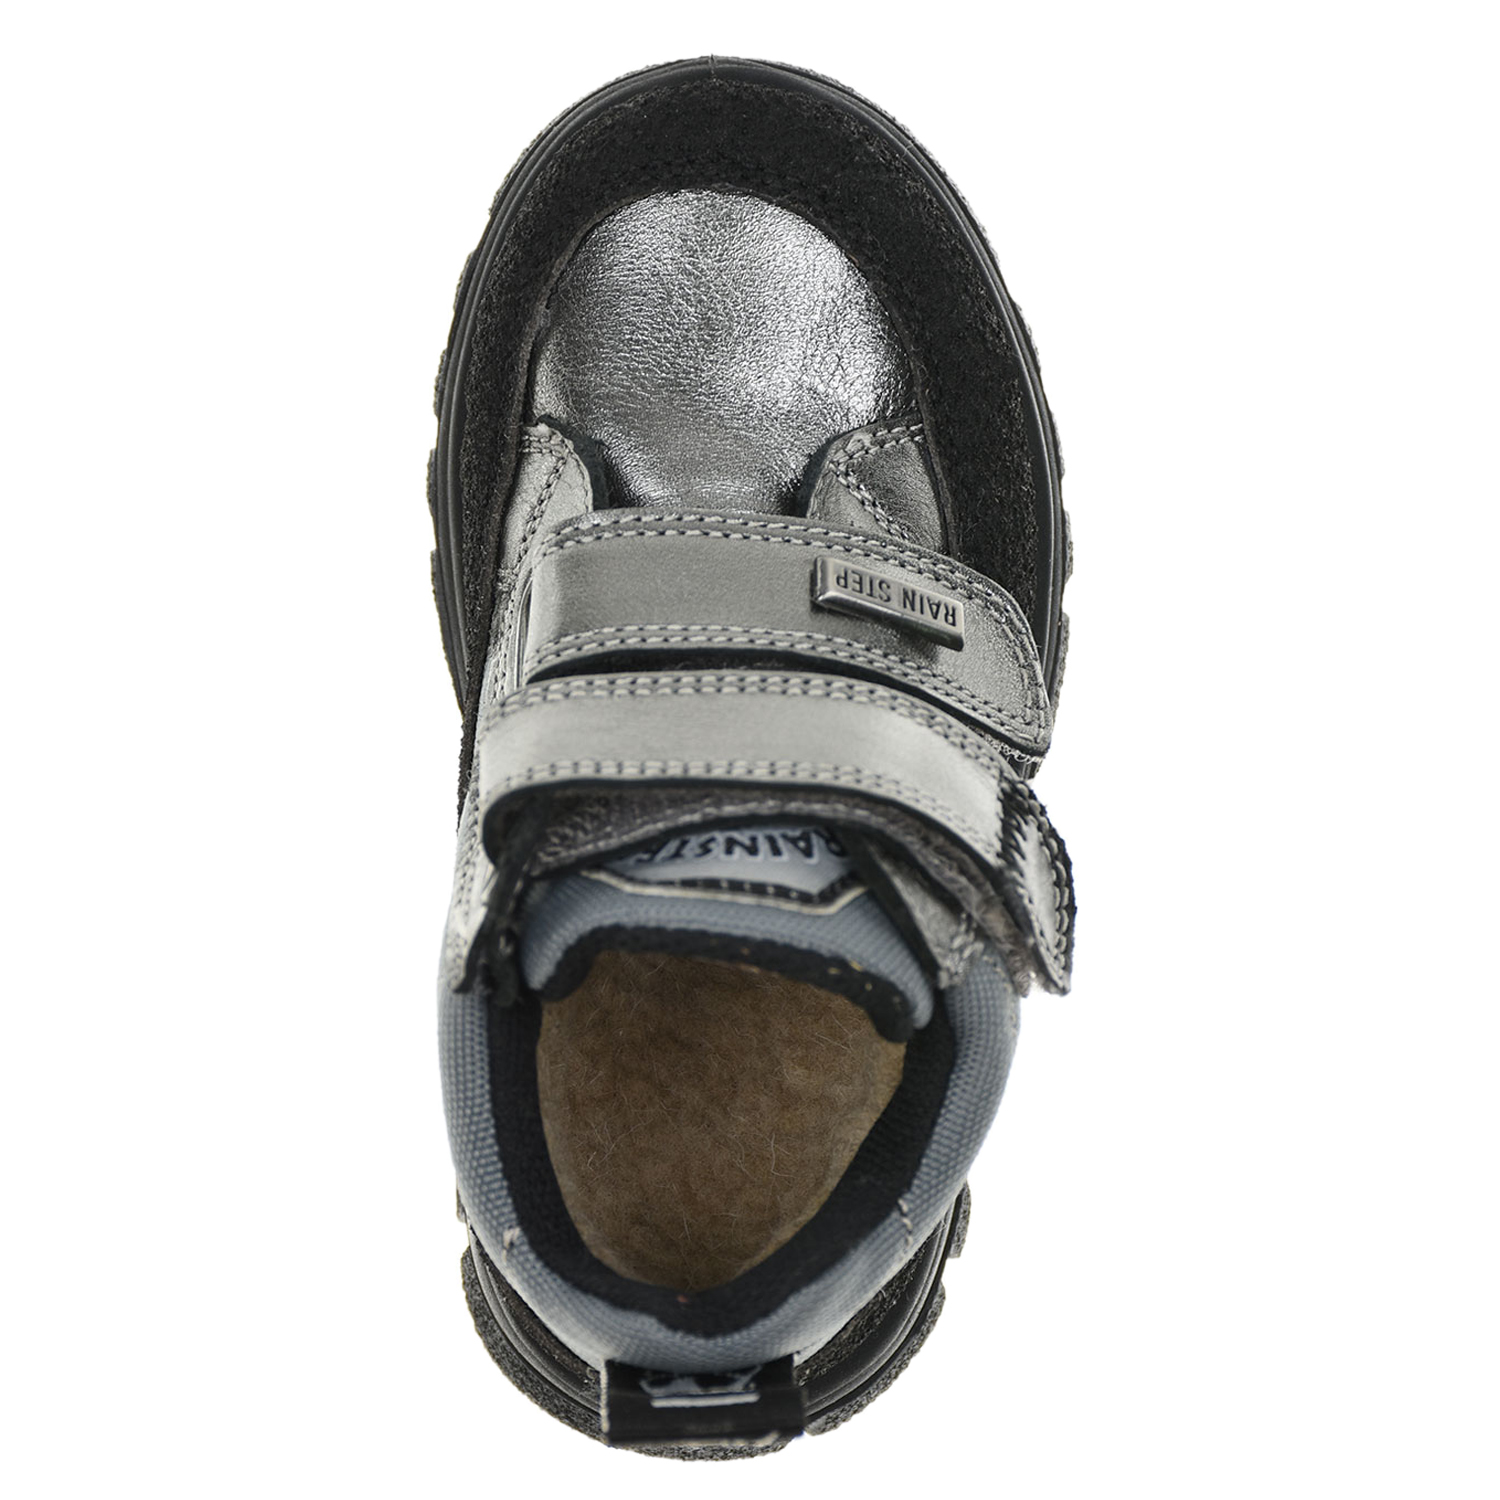 Высокие кроссовки с серебристой отделкой Naturino детские, размер 23, цвет серебристый - фото 4